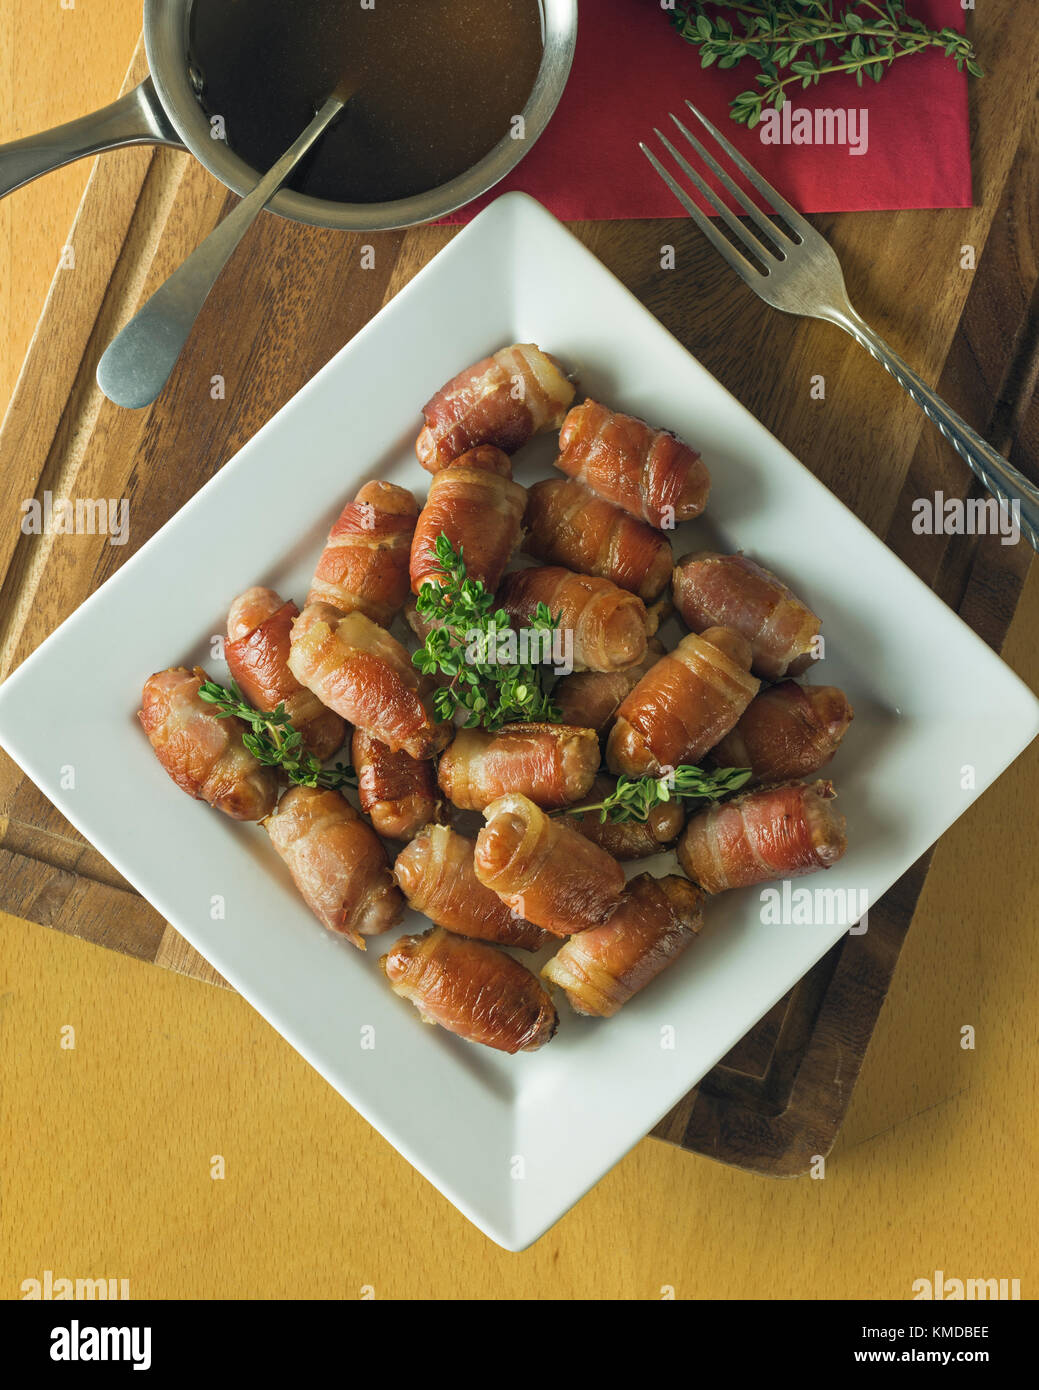 Les porcs dans des couvertures.Saucisses et bacon rouleaux. UK Food Banque D'Images